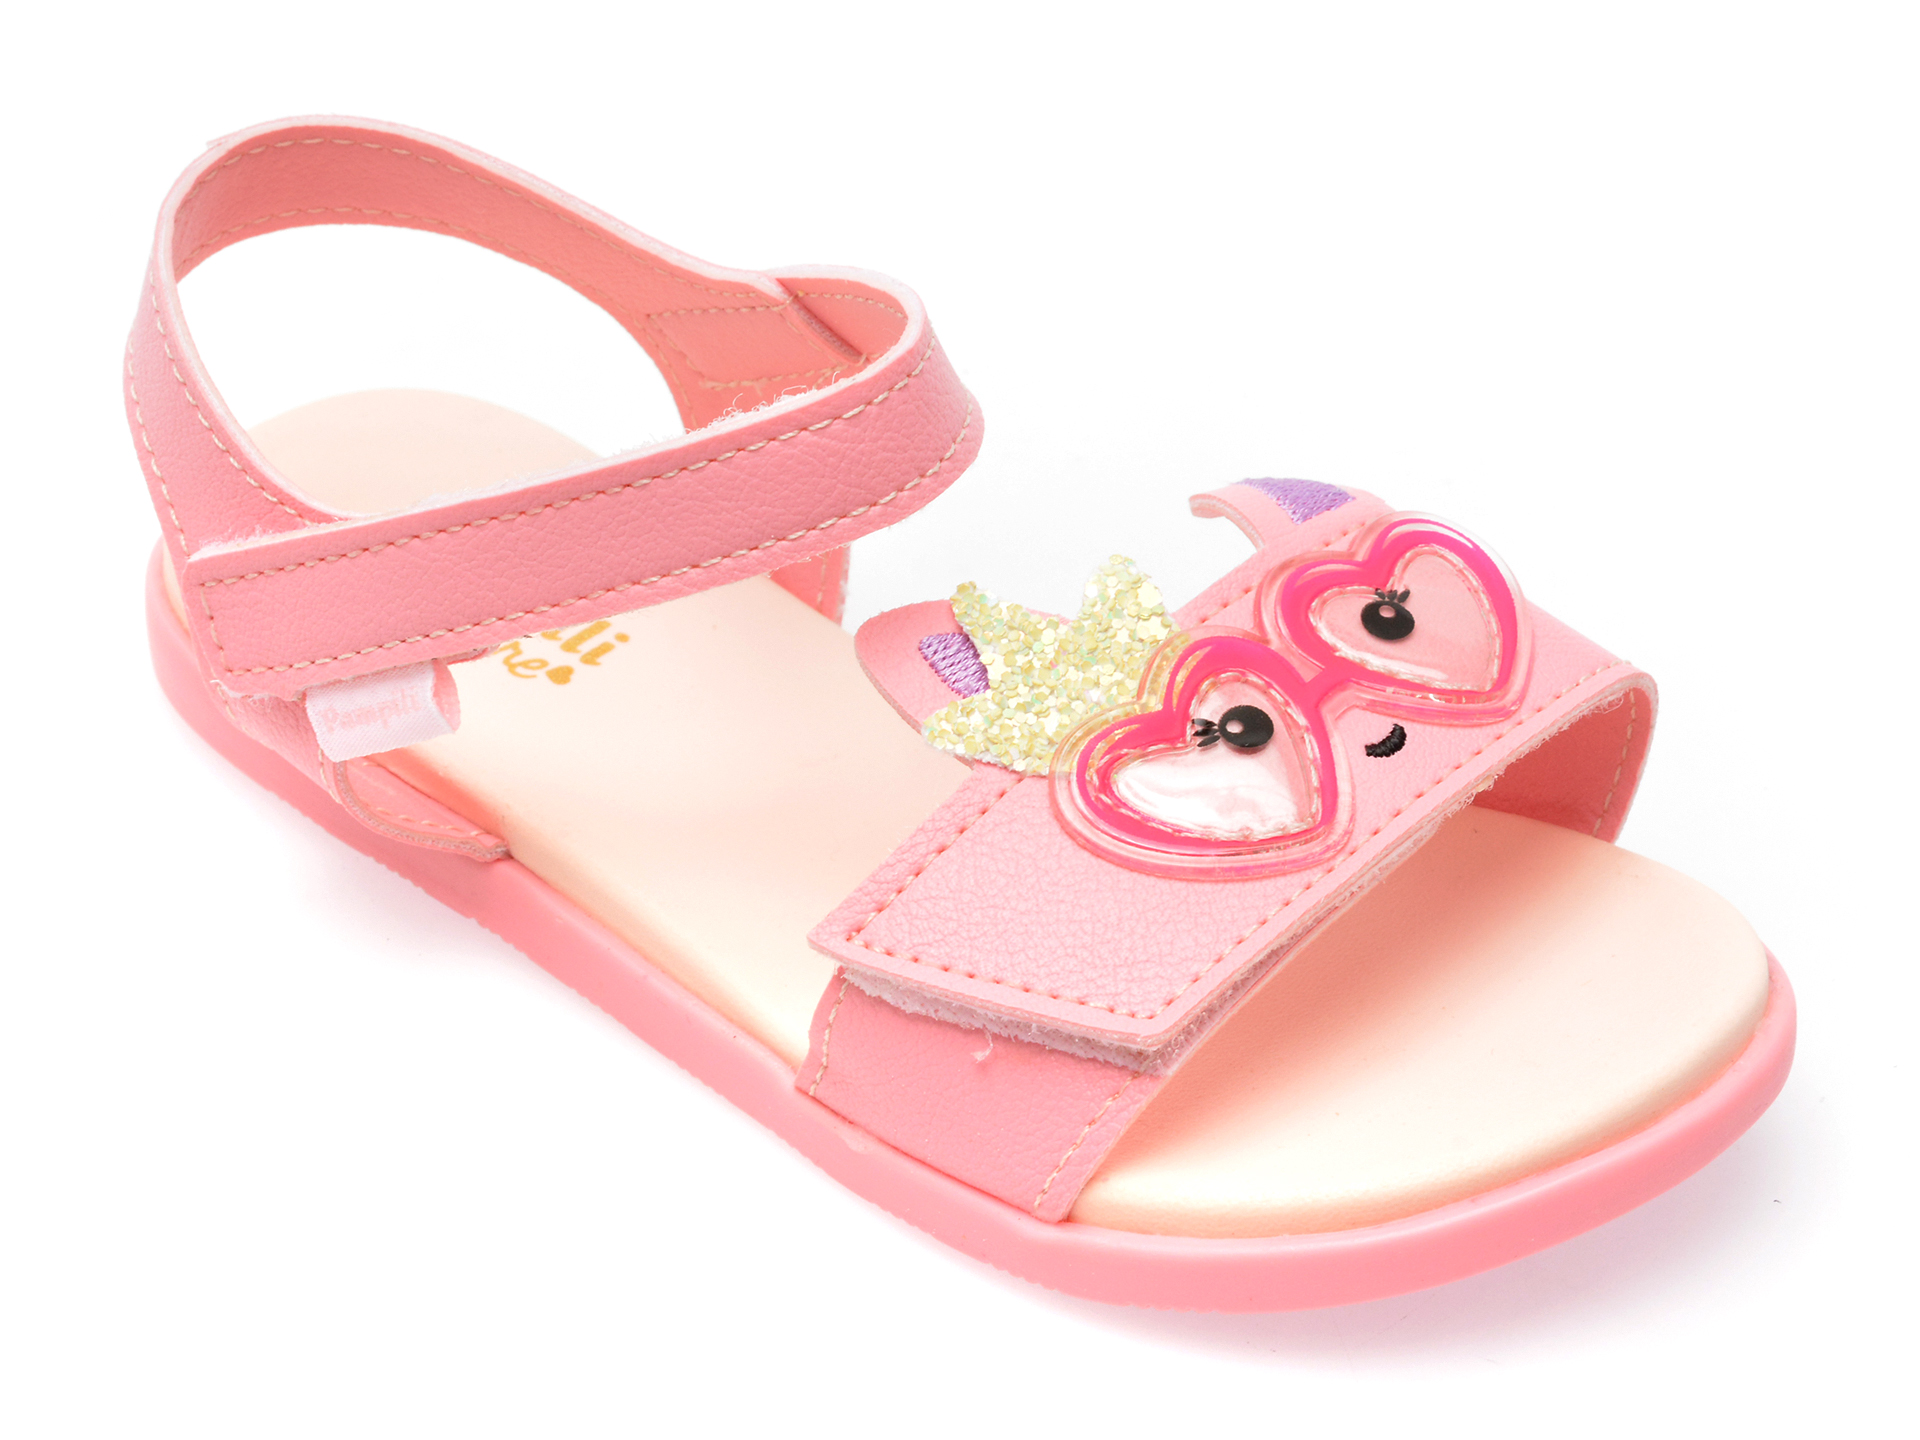 Sandale PAMPILI roz, 639058, din piele ecologica /copii/incaltaminte